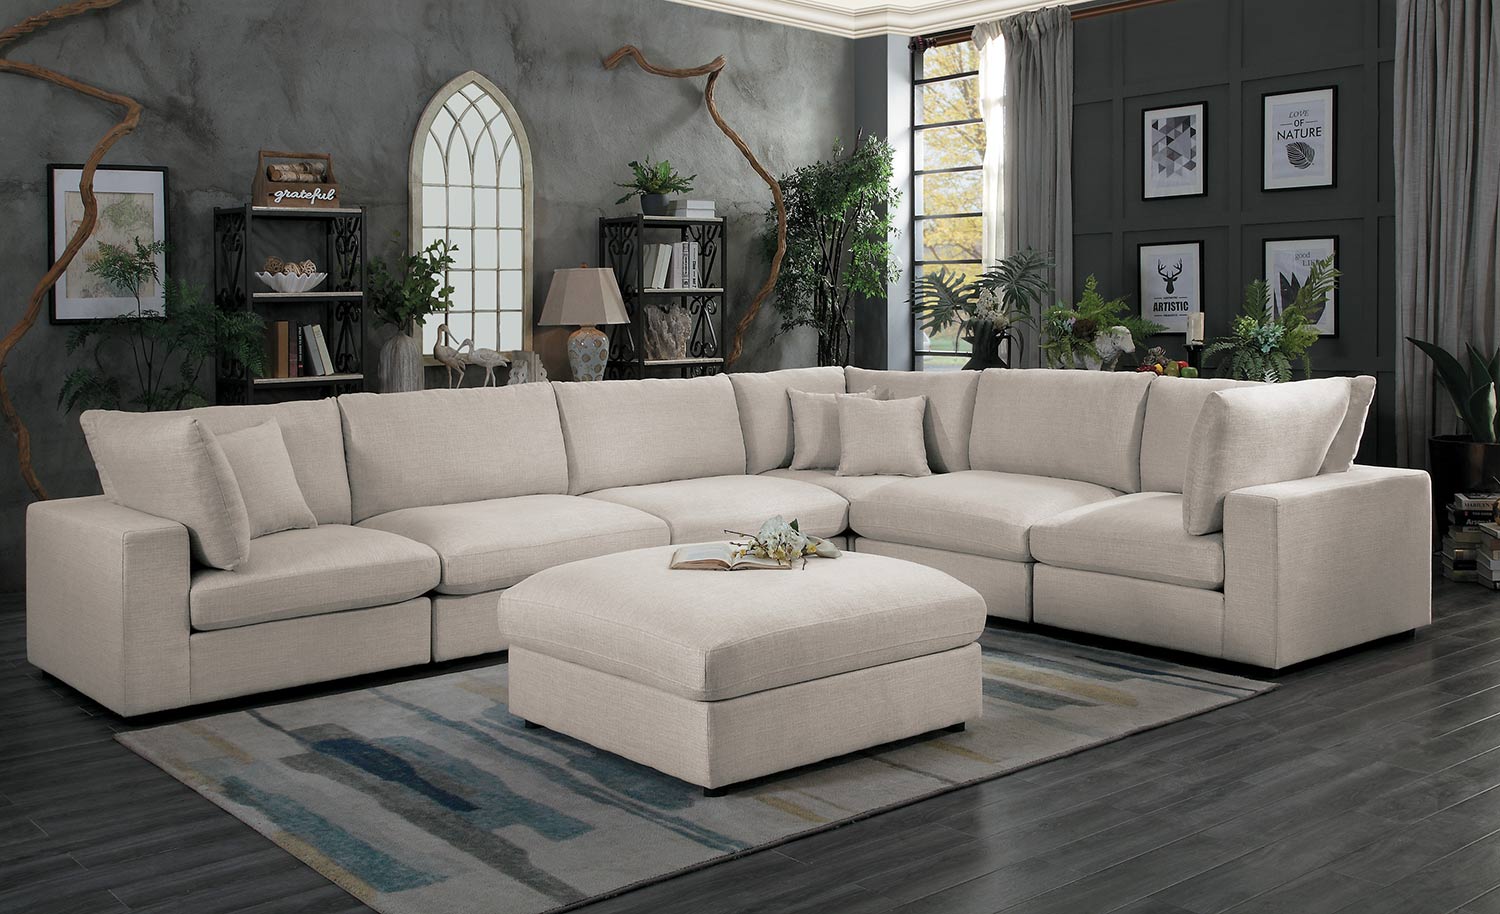 Homelegance Casoria Sectional Sofa Set - Neutral